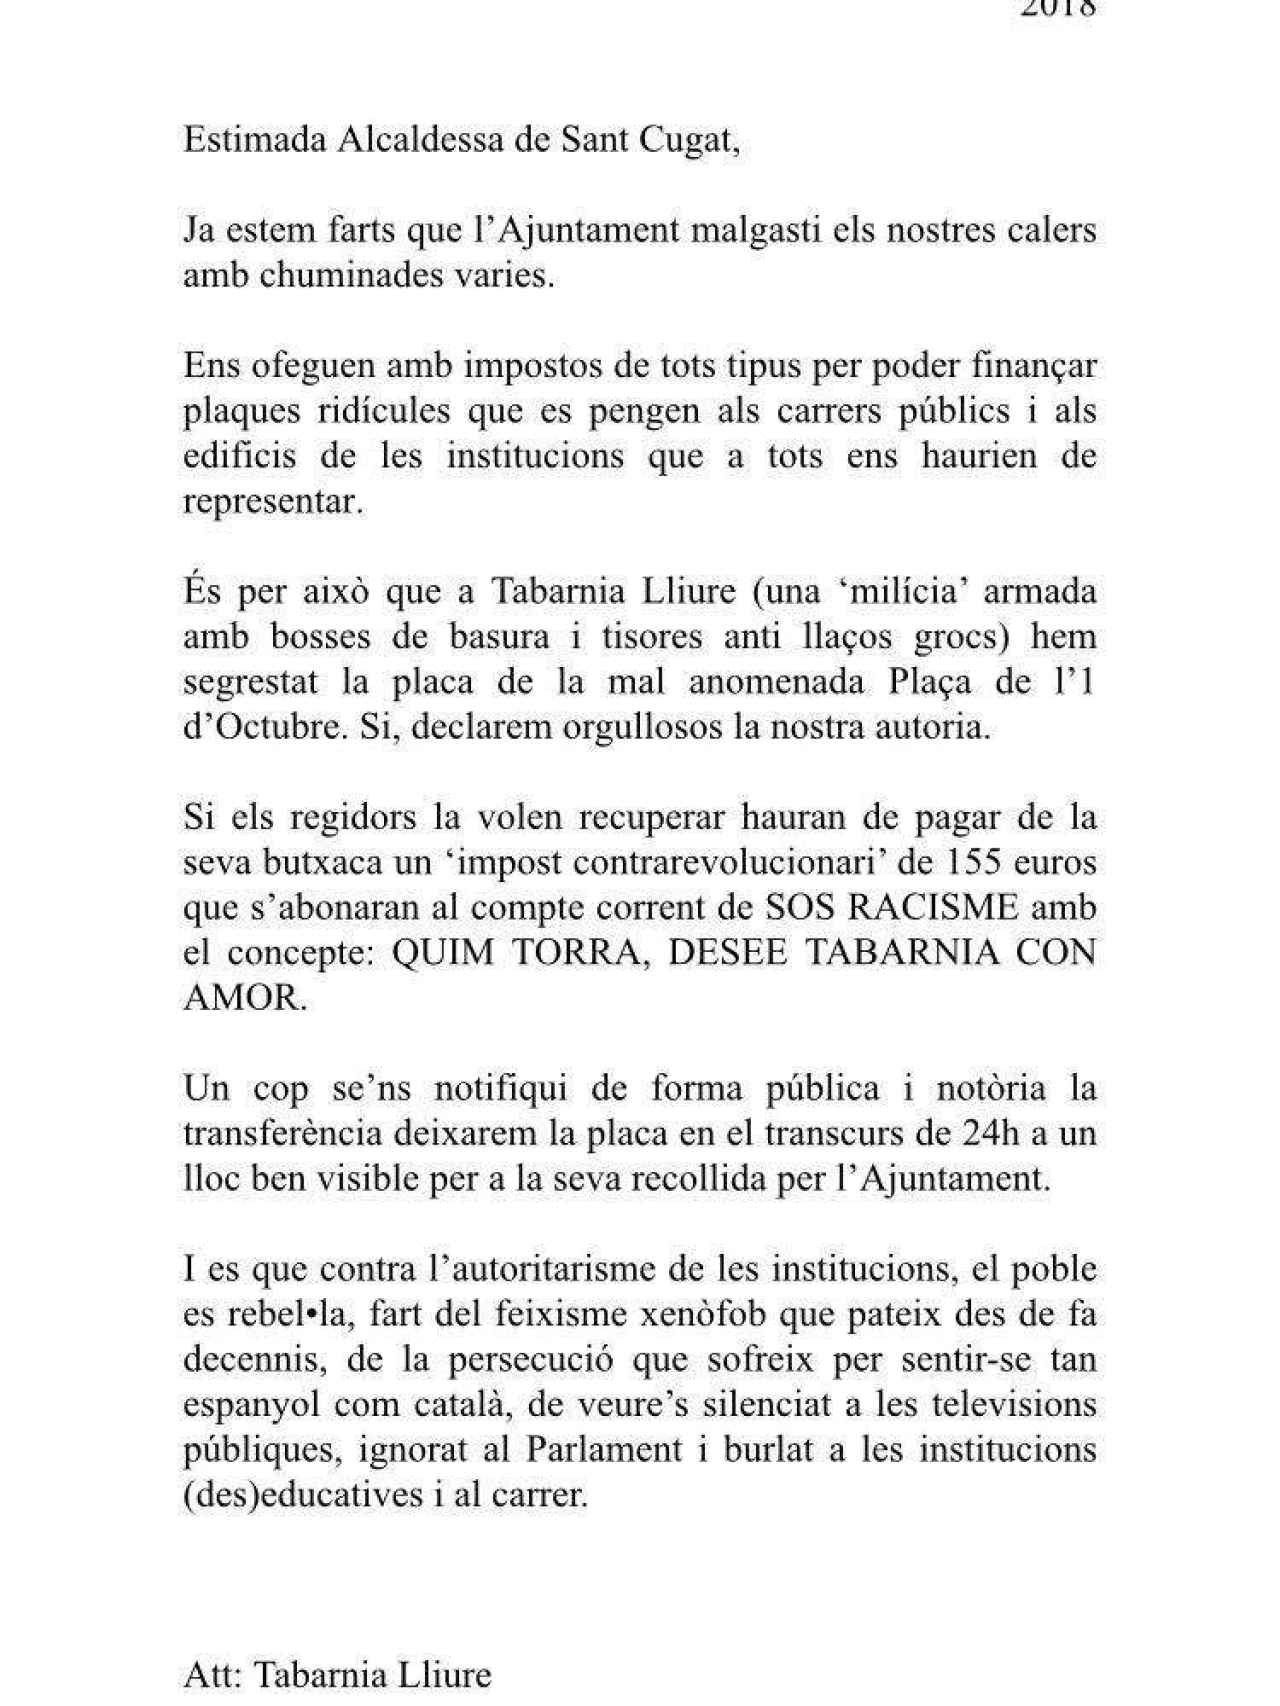 Carta original, en catalán, enviada por Tabarnia Lliure a la alcaldesa de Snt Cugat